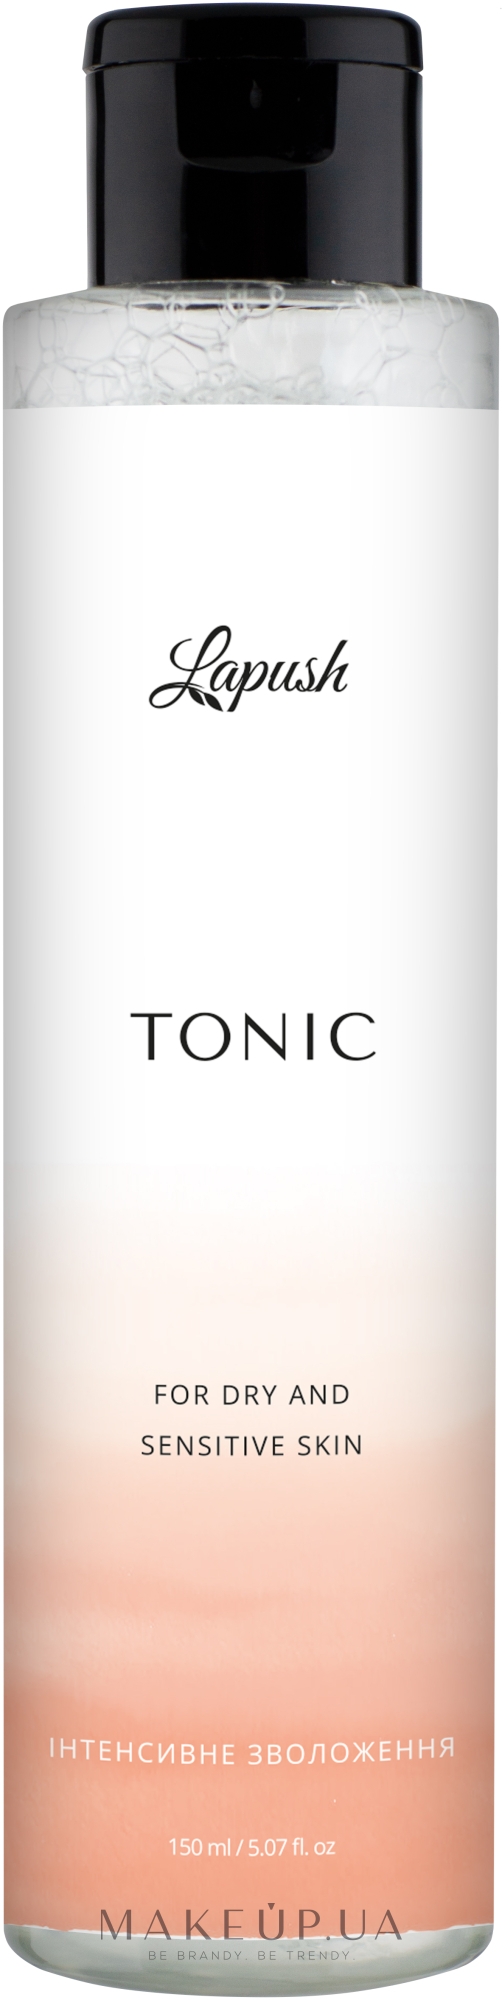 Тонік "Інтенсивне зволоження" для сухої та чутливої шкіри - Lapush Tonic For Dry And Sensitive Skin — фото 150ml